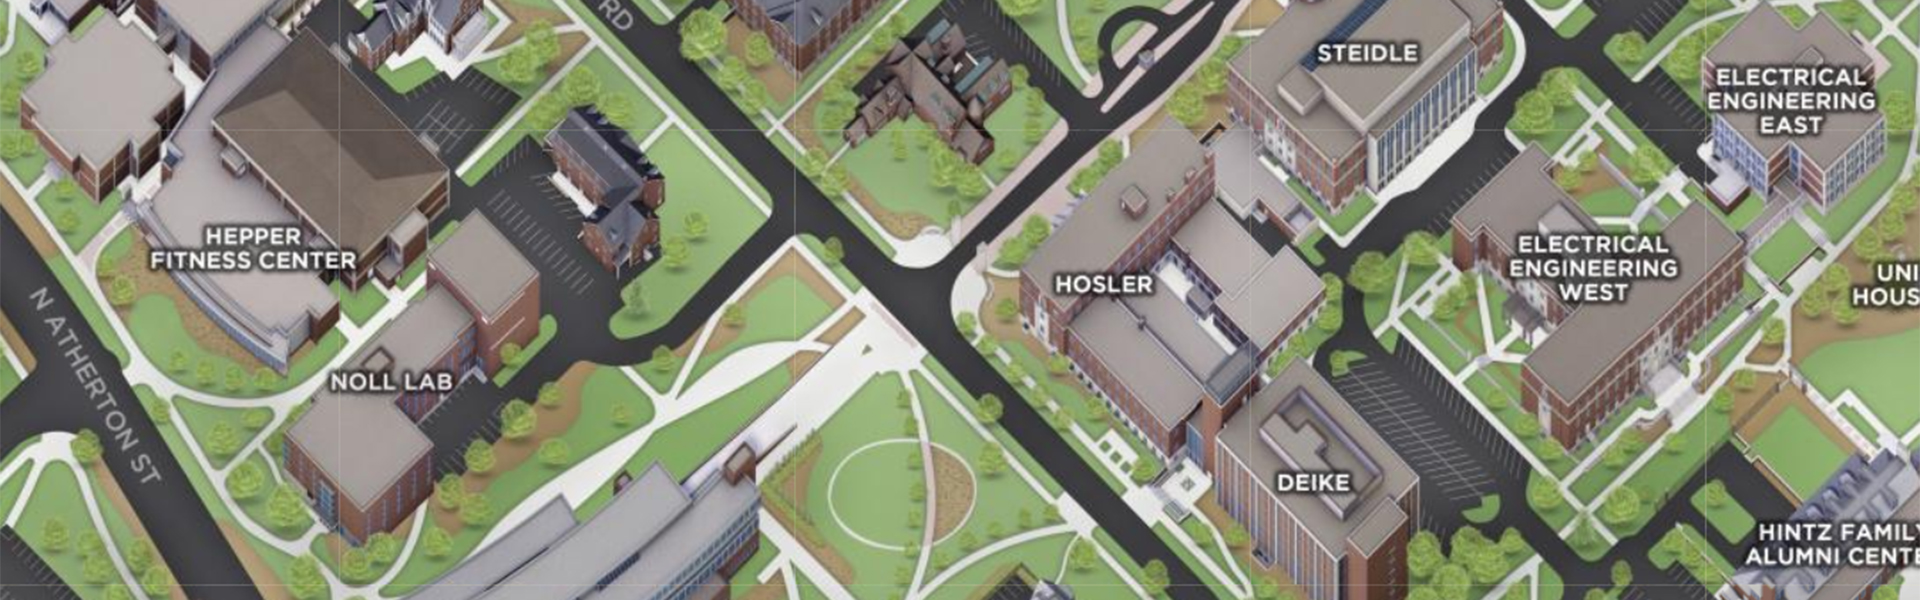 Hosler map